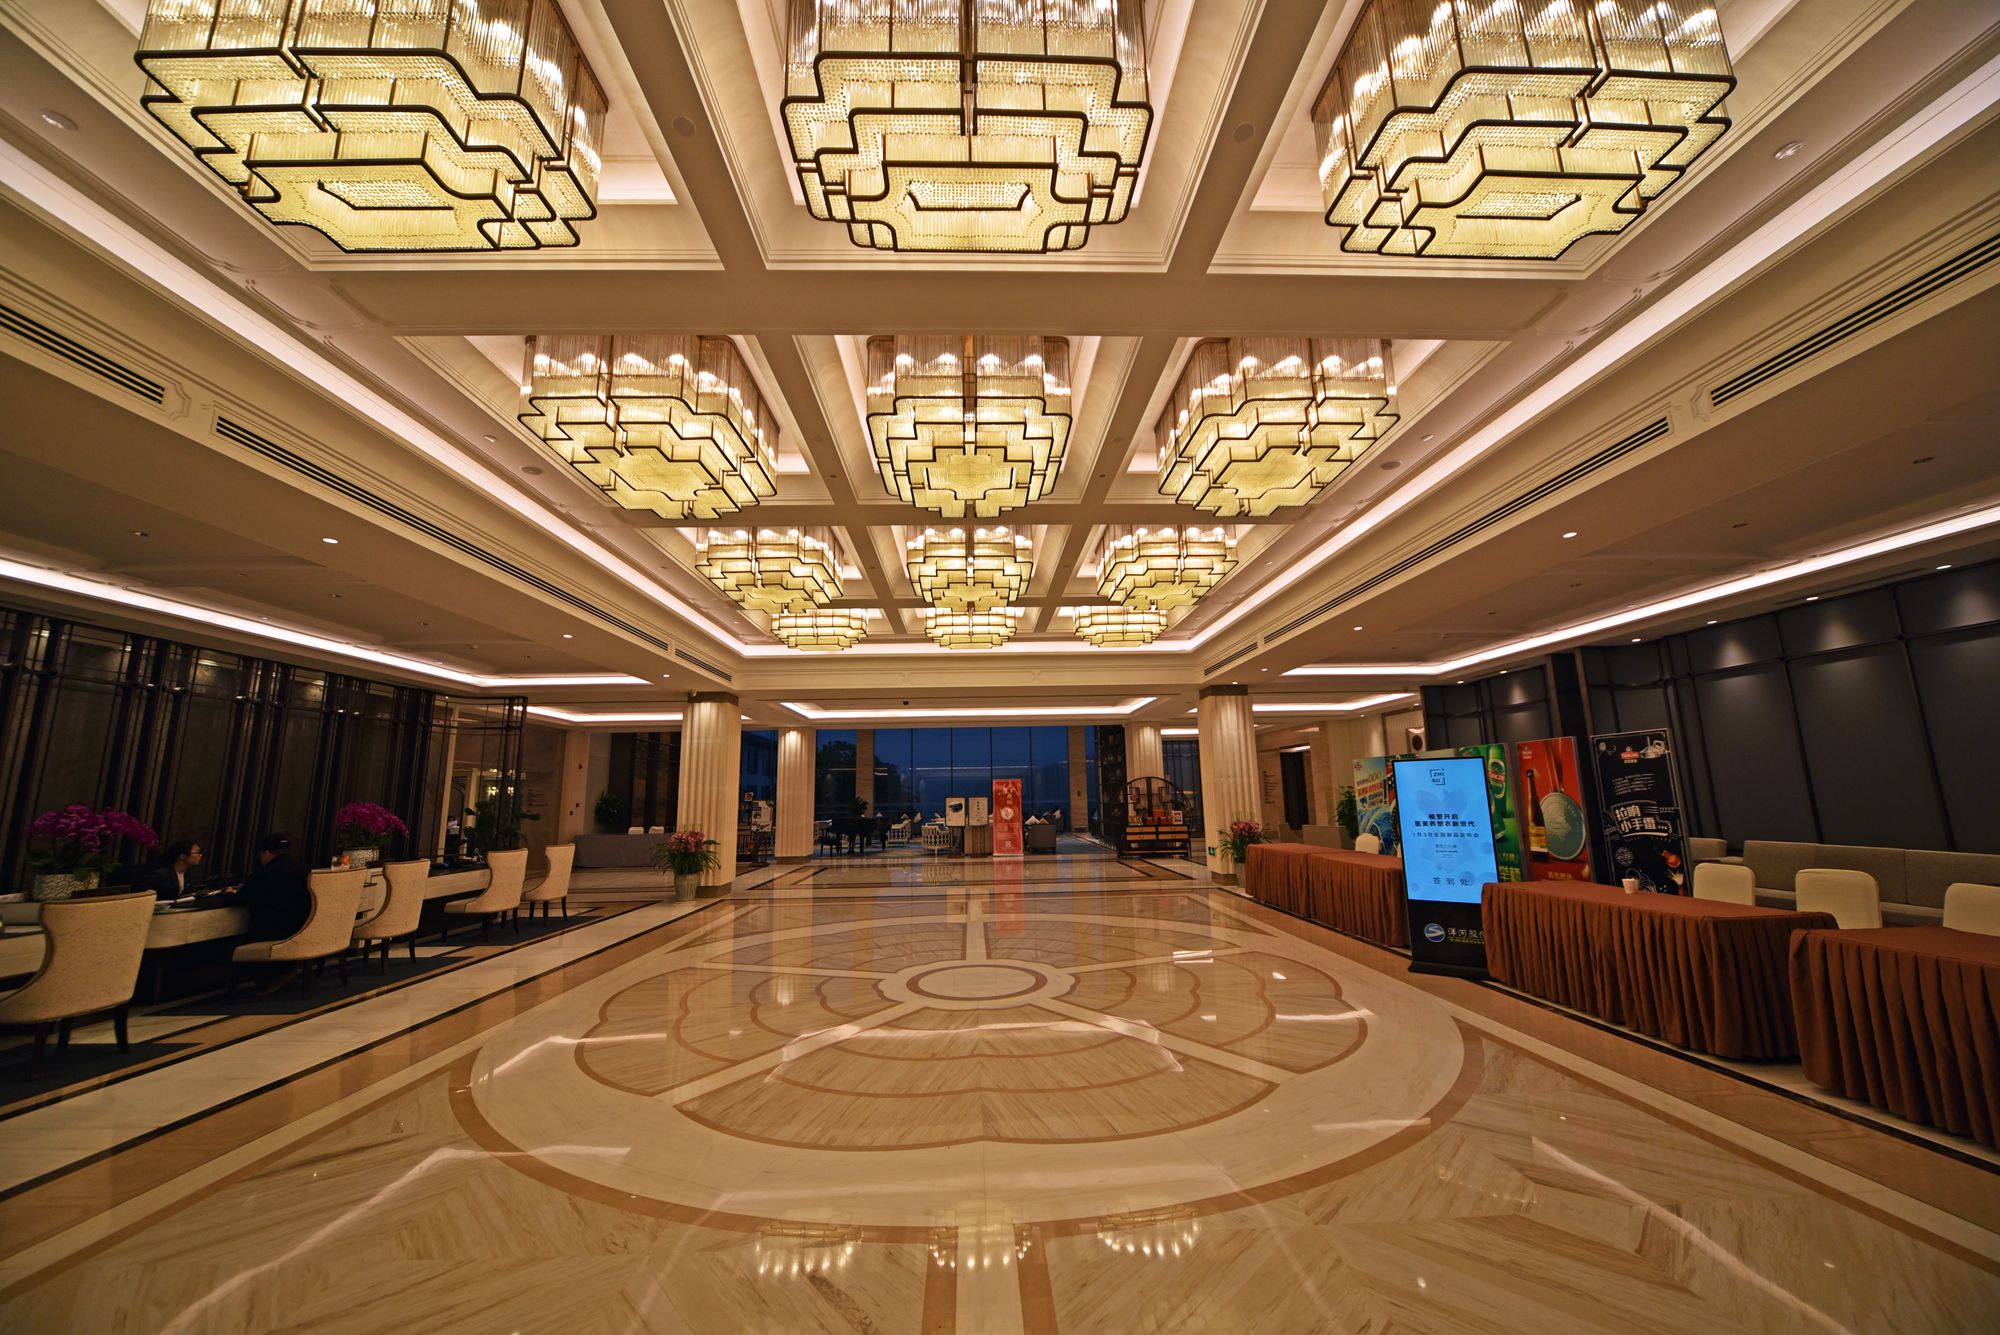 唐山新华联丽景湾国际酒店 - 北京弘高创意建筑设计股份有限公司官方网站